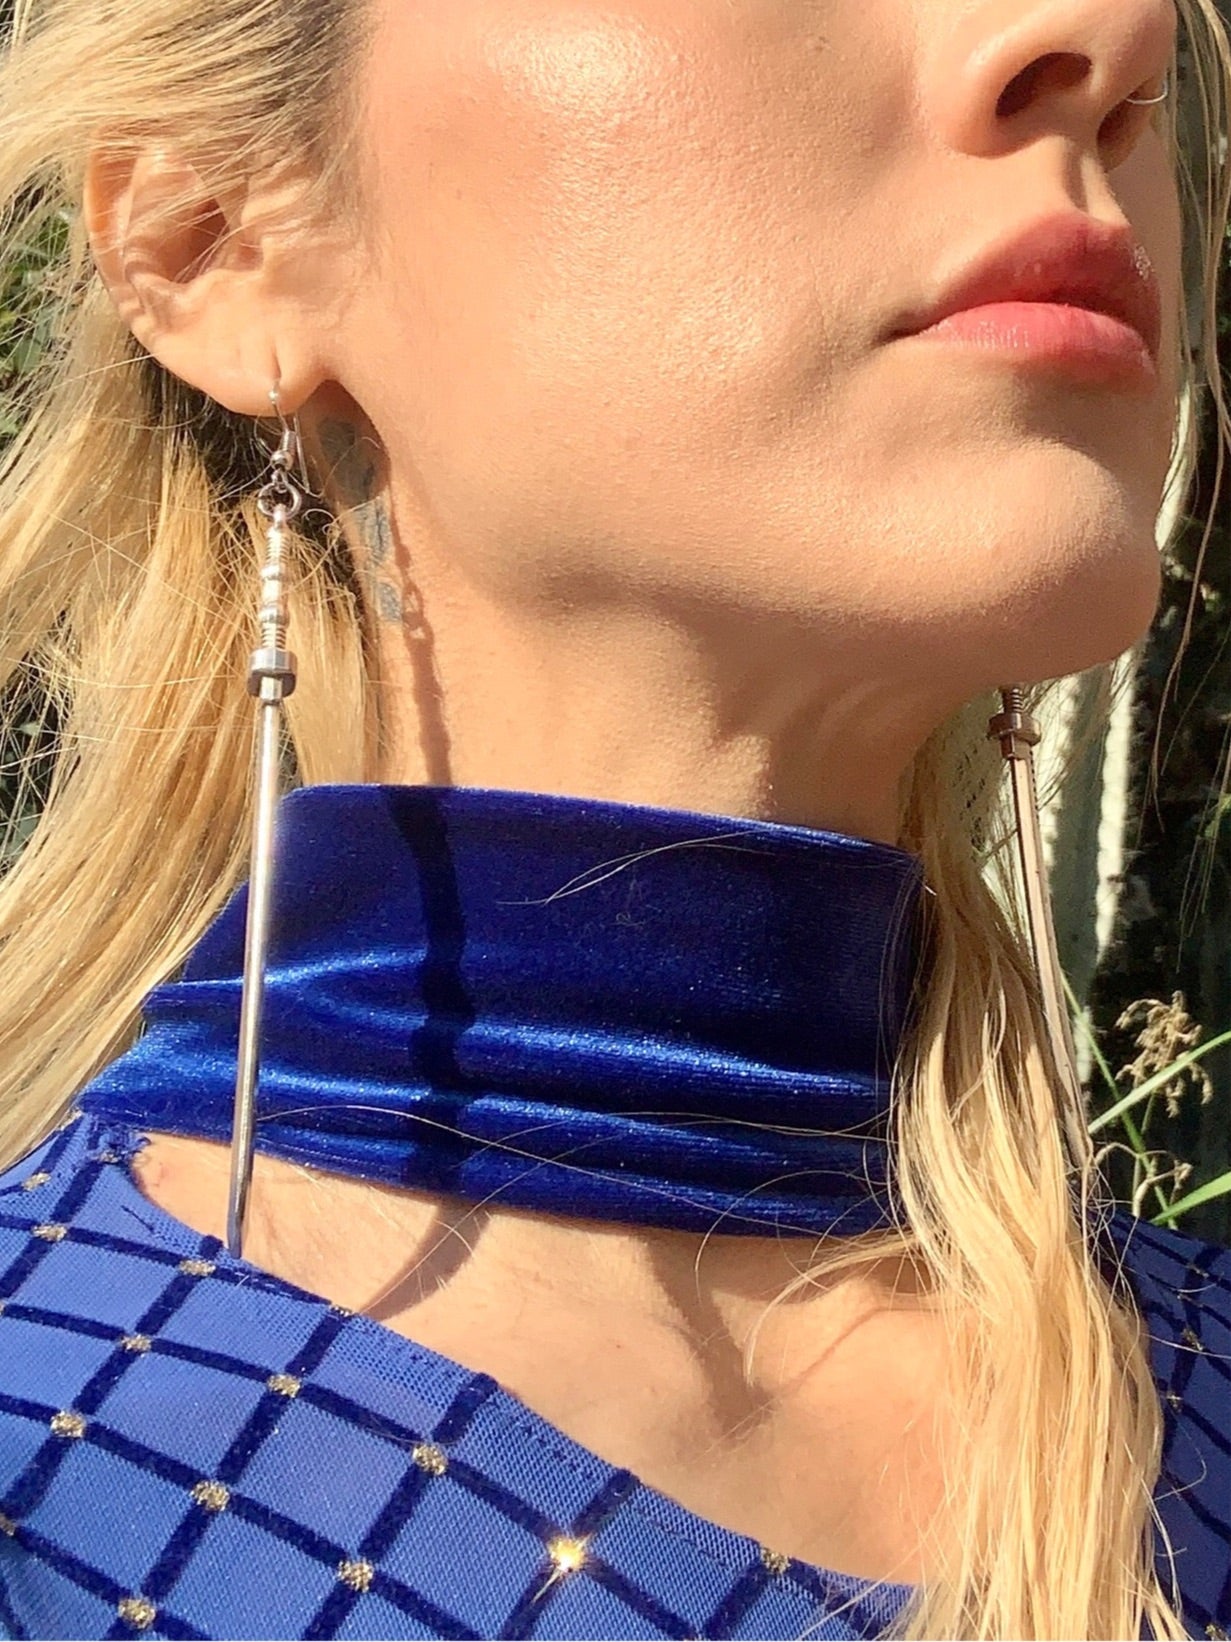 Katana earrings